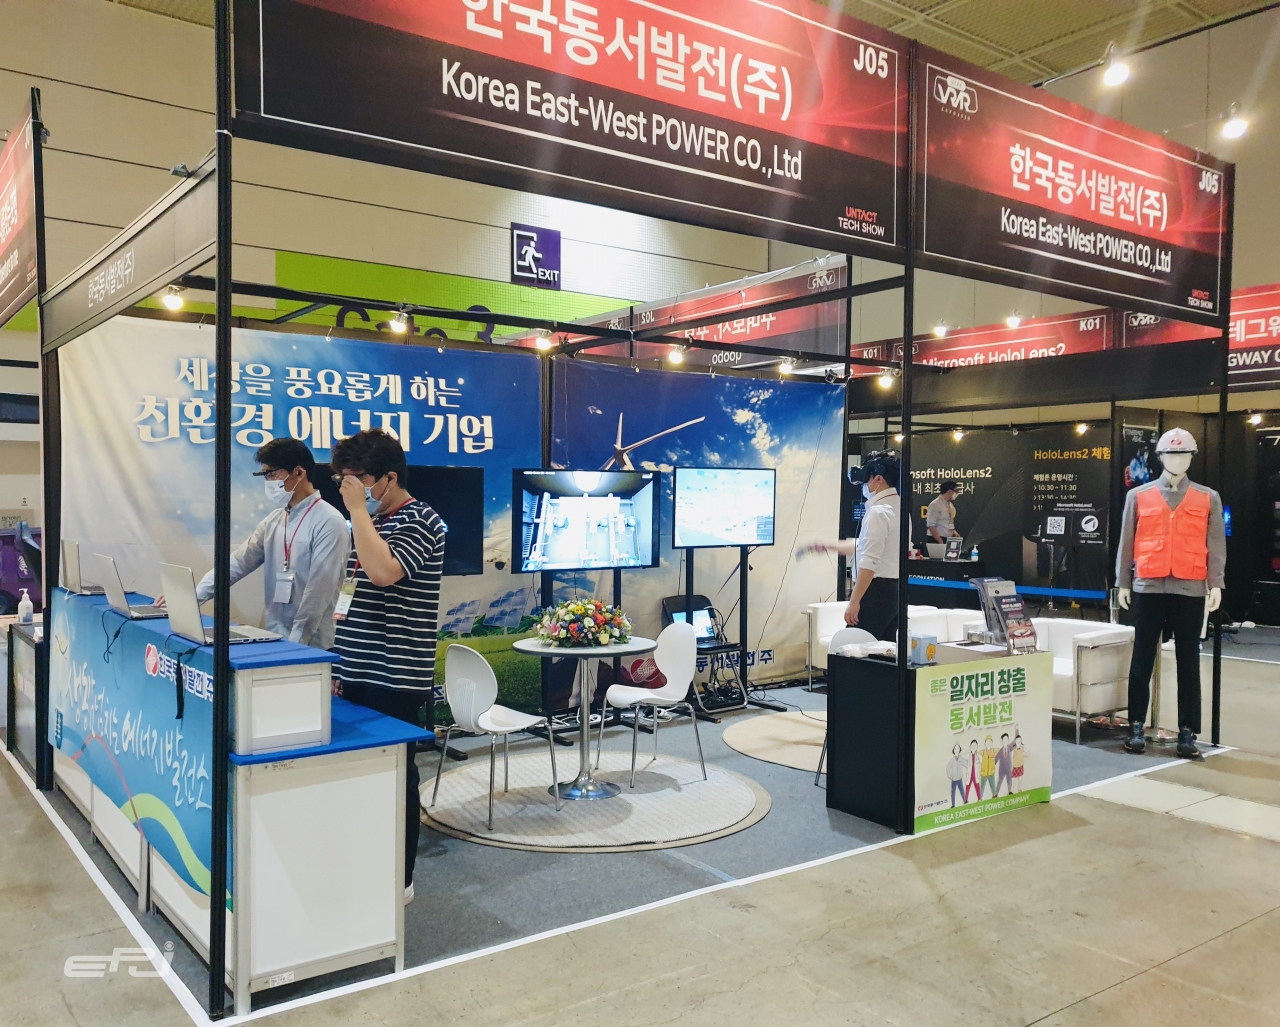 ‘2020 서울 가상·증강현실 박람회’에 설치된 한국동서발전 부스 모습